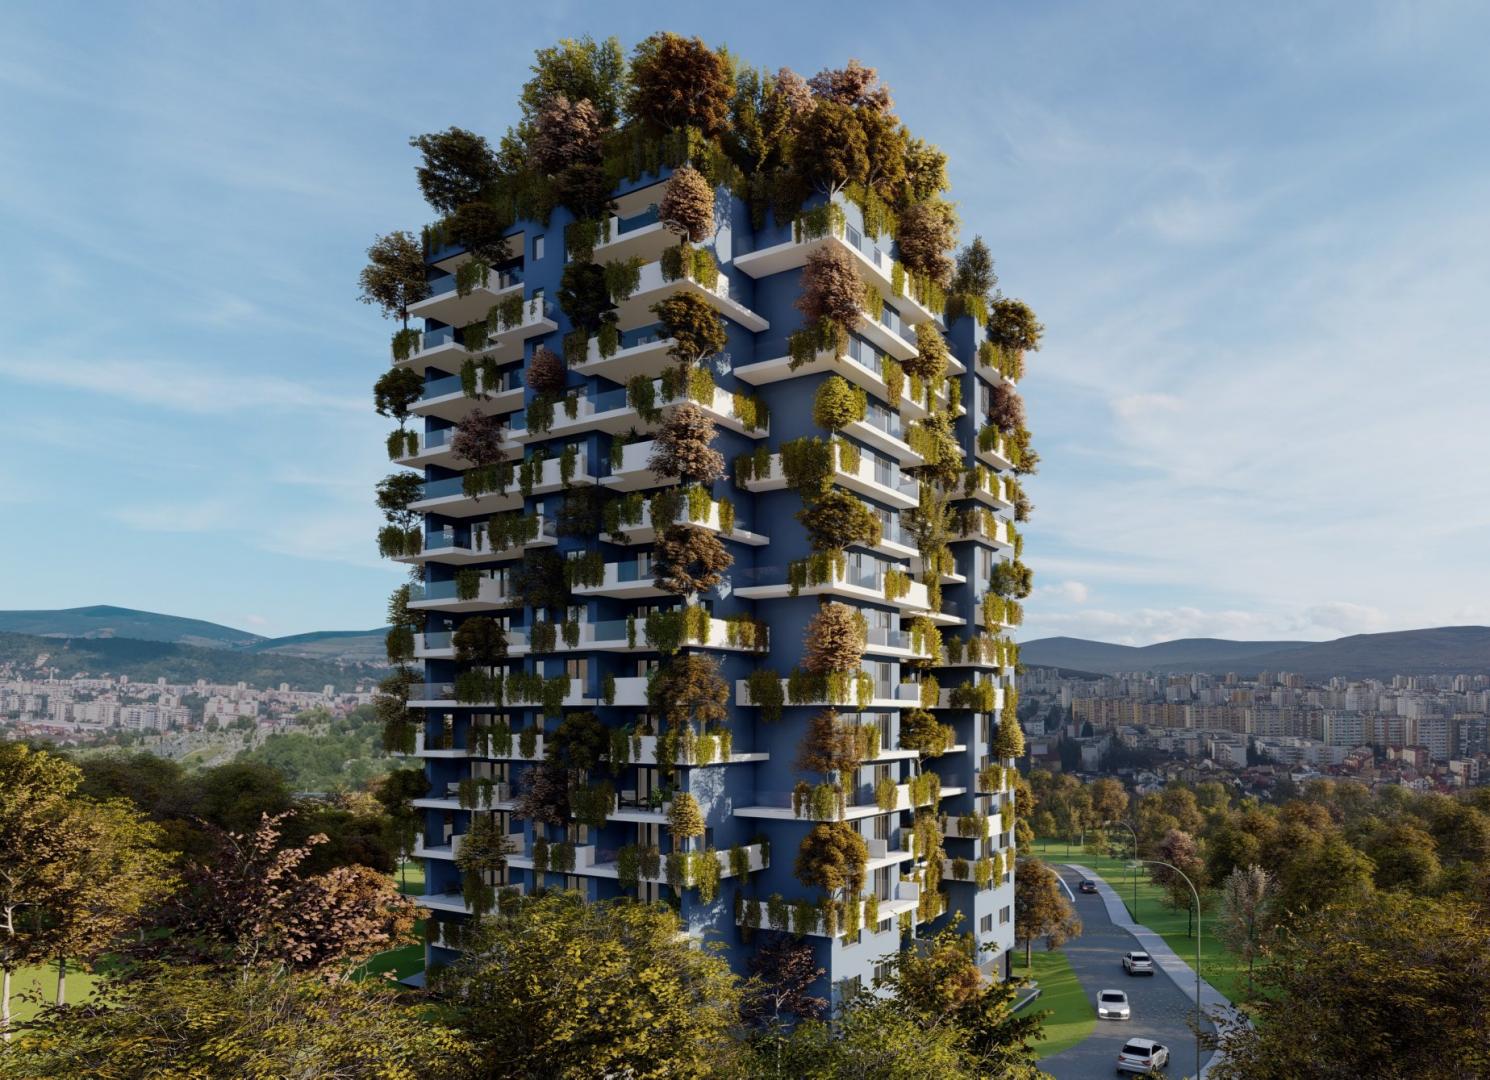 Pădurile verticale, viitorul arhitecturii urbane şi prietenul sănătăţii mentale. Investeşte într-o astfel de locuinţă la Cluj-Napoca